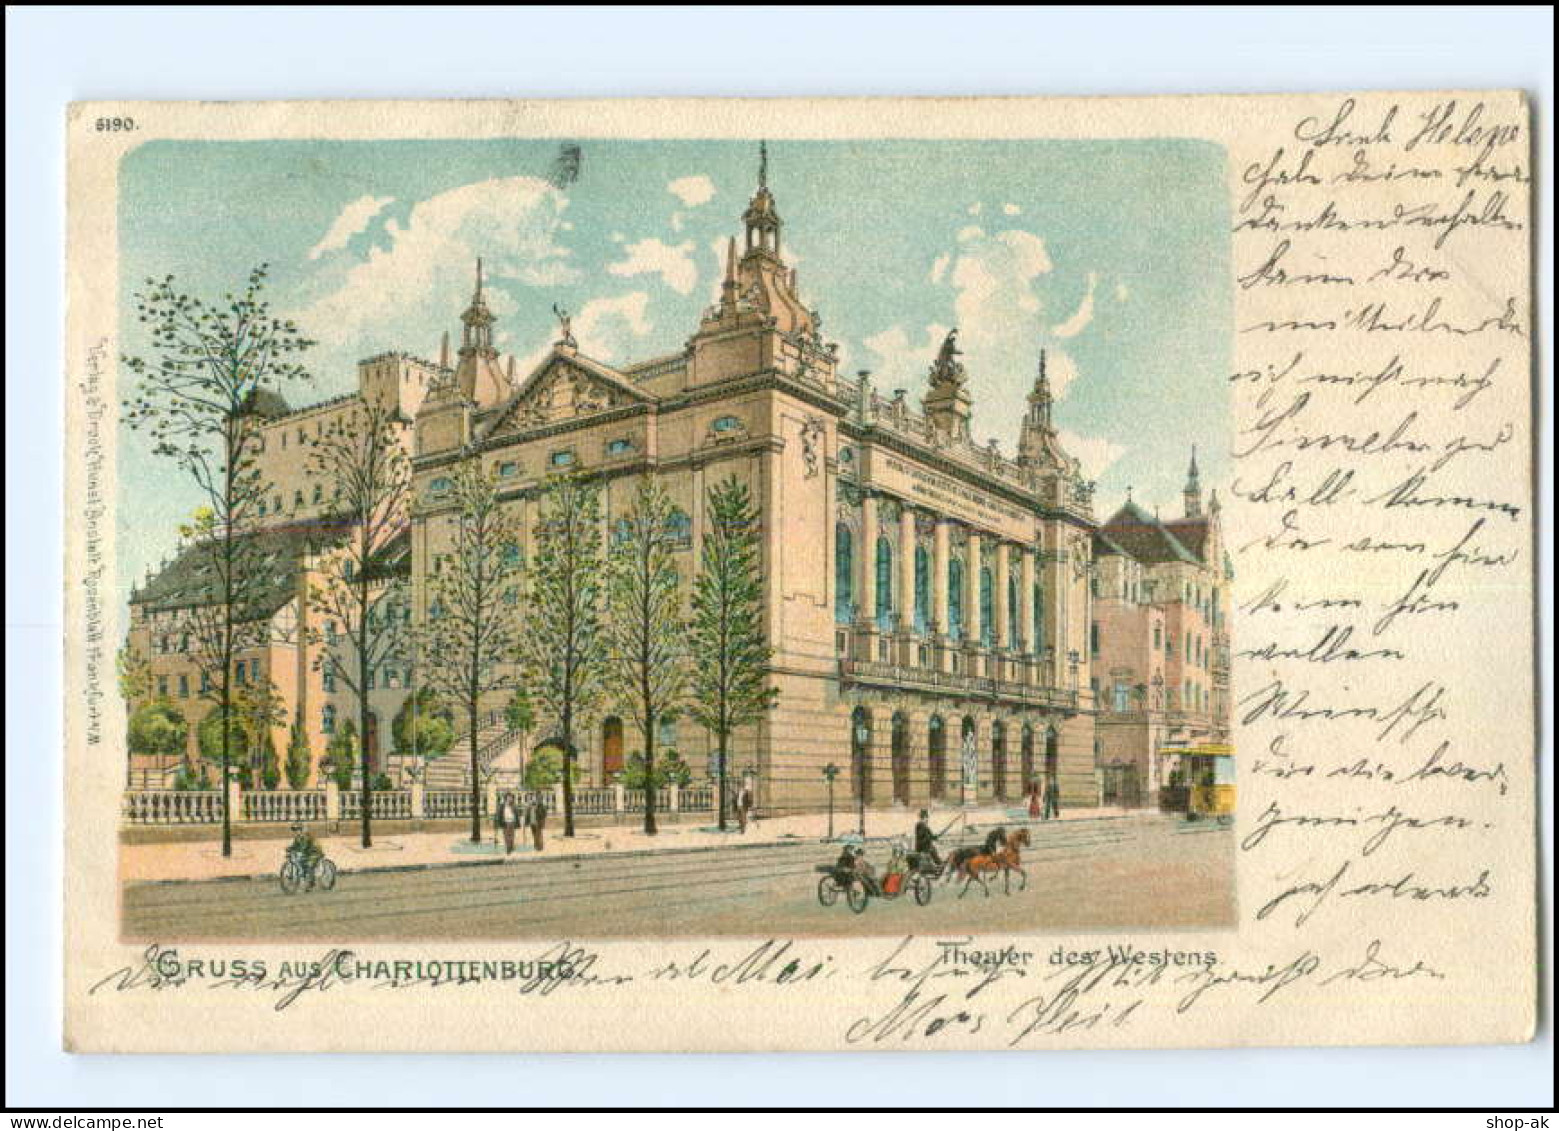 U5861/ Berlin Gruß Aus Charlottenburg Theater Des Westens 1904 Litho AK - Charlottenburg